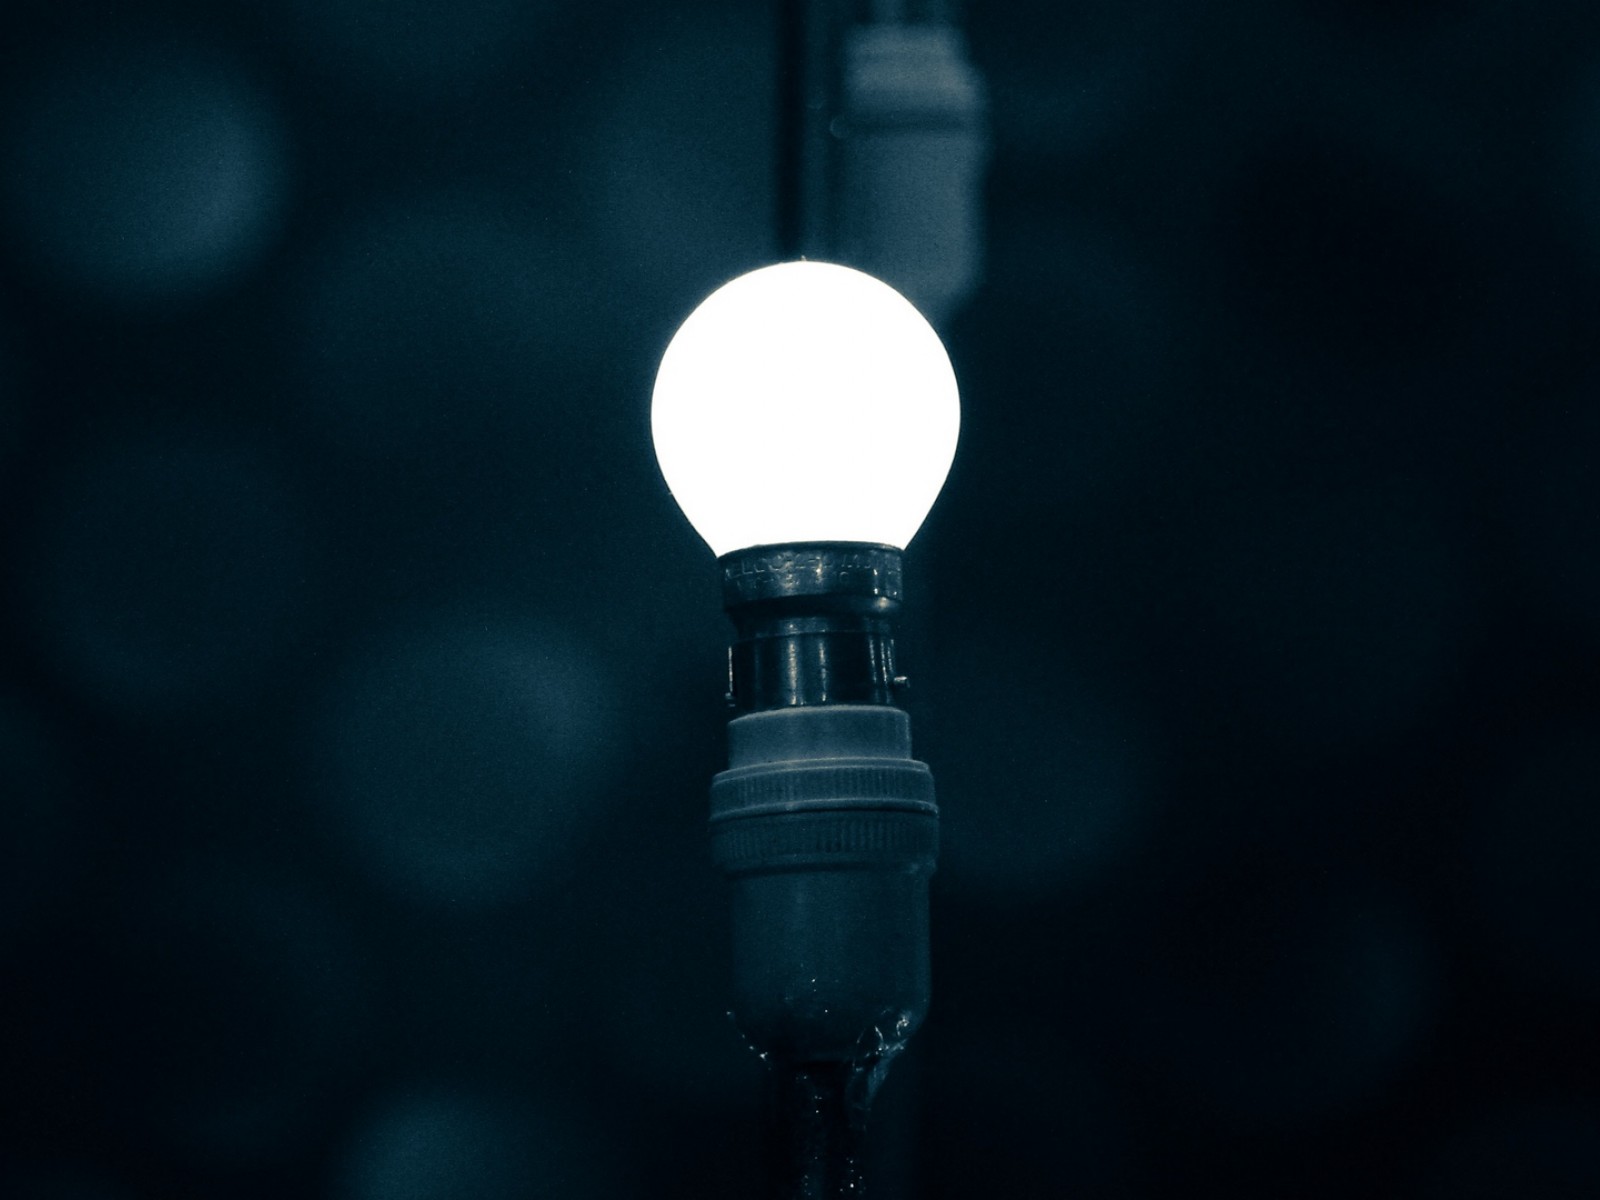 Light bulb at the dark HD Wallpaper